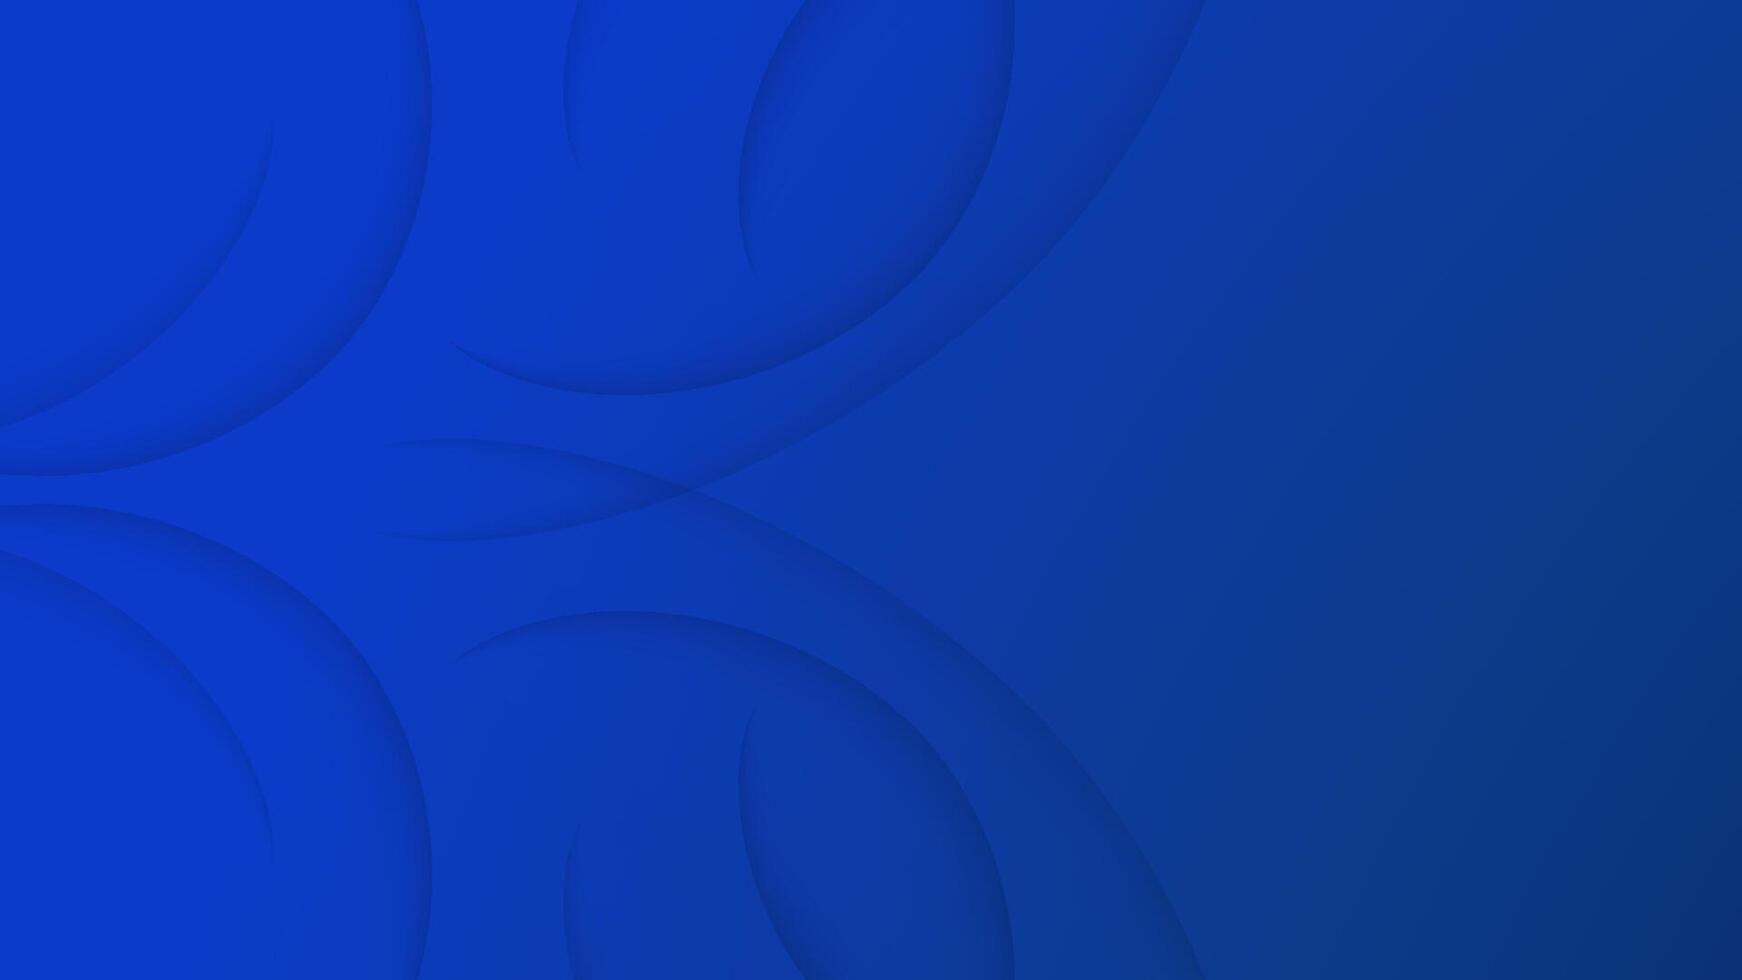 abstract Koninklijk blauw achtergrond met kromme lijn. sjabloon ontwerp voor bedrijf presentatie, omslag, uitnodiging banier, landen bladzijde, ui. vector